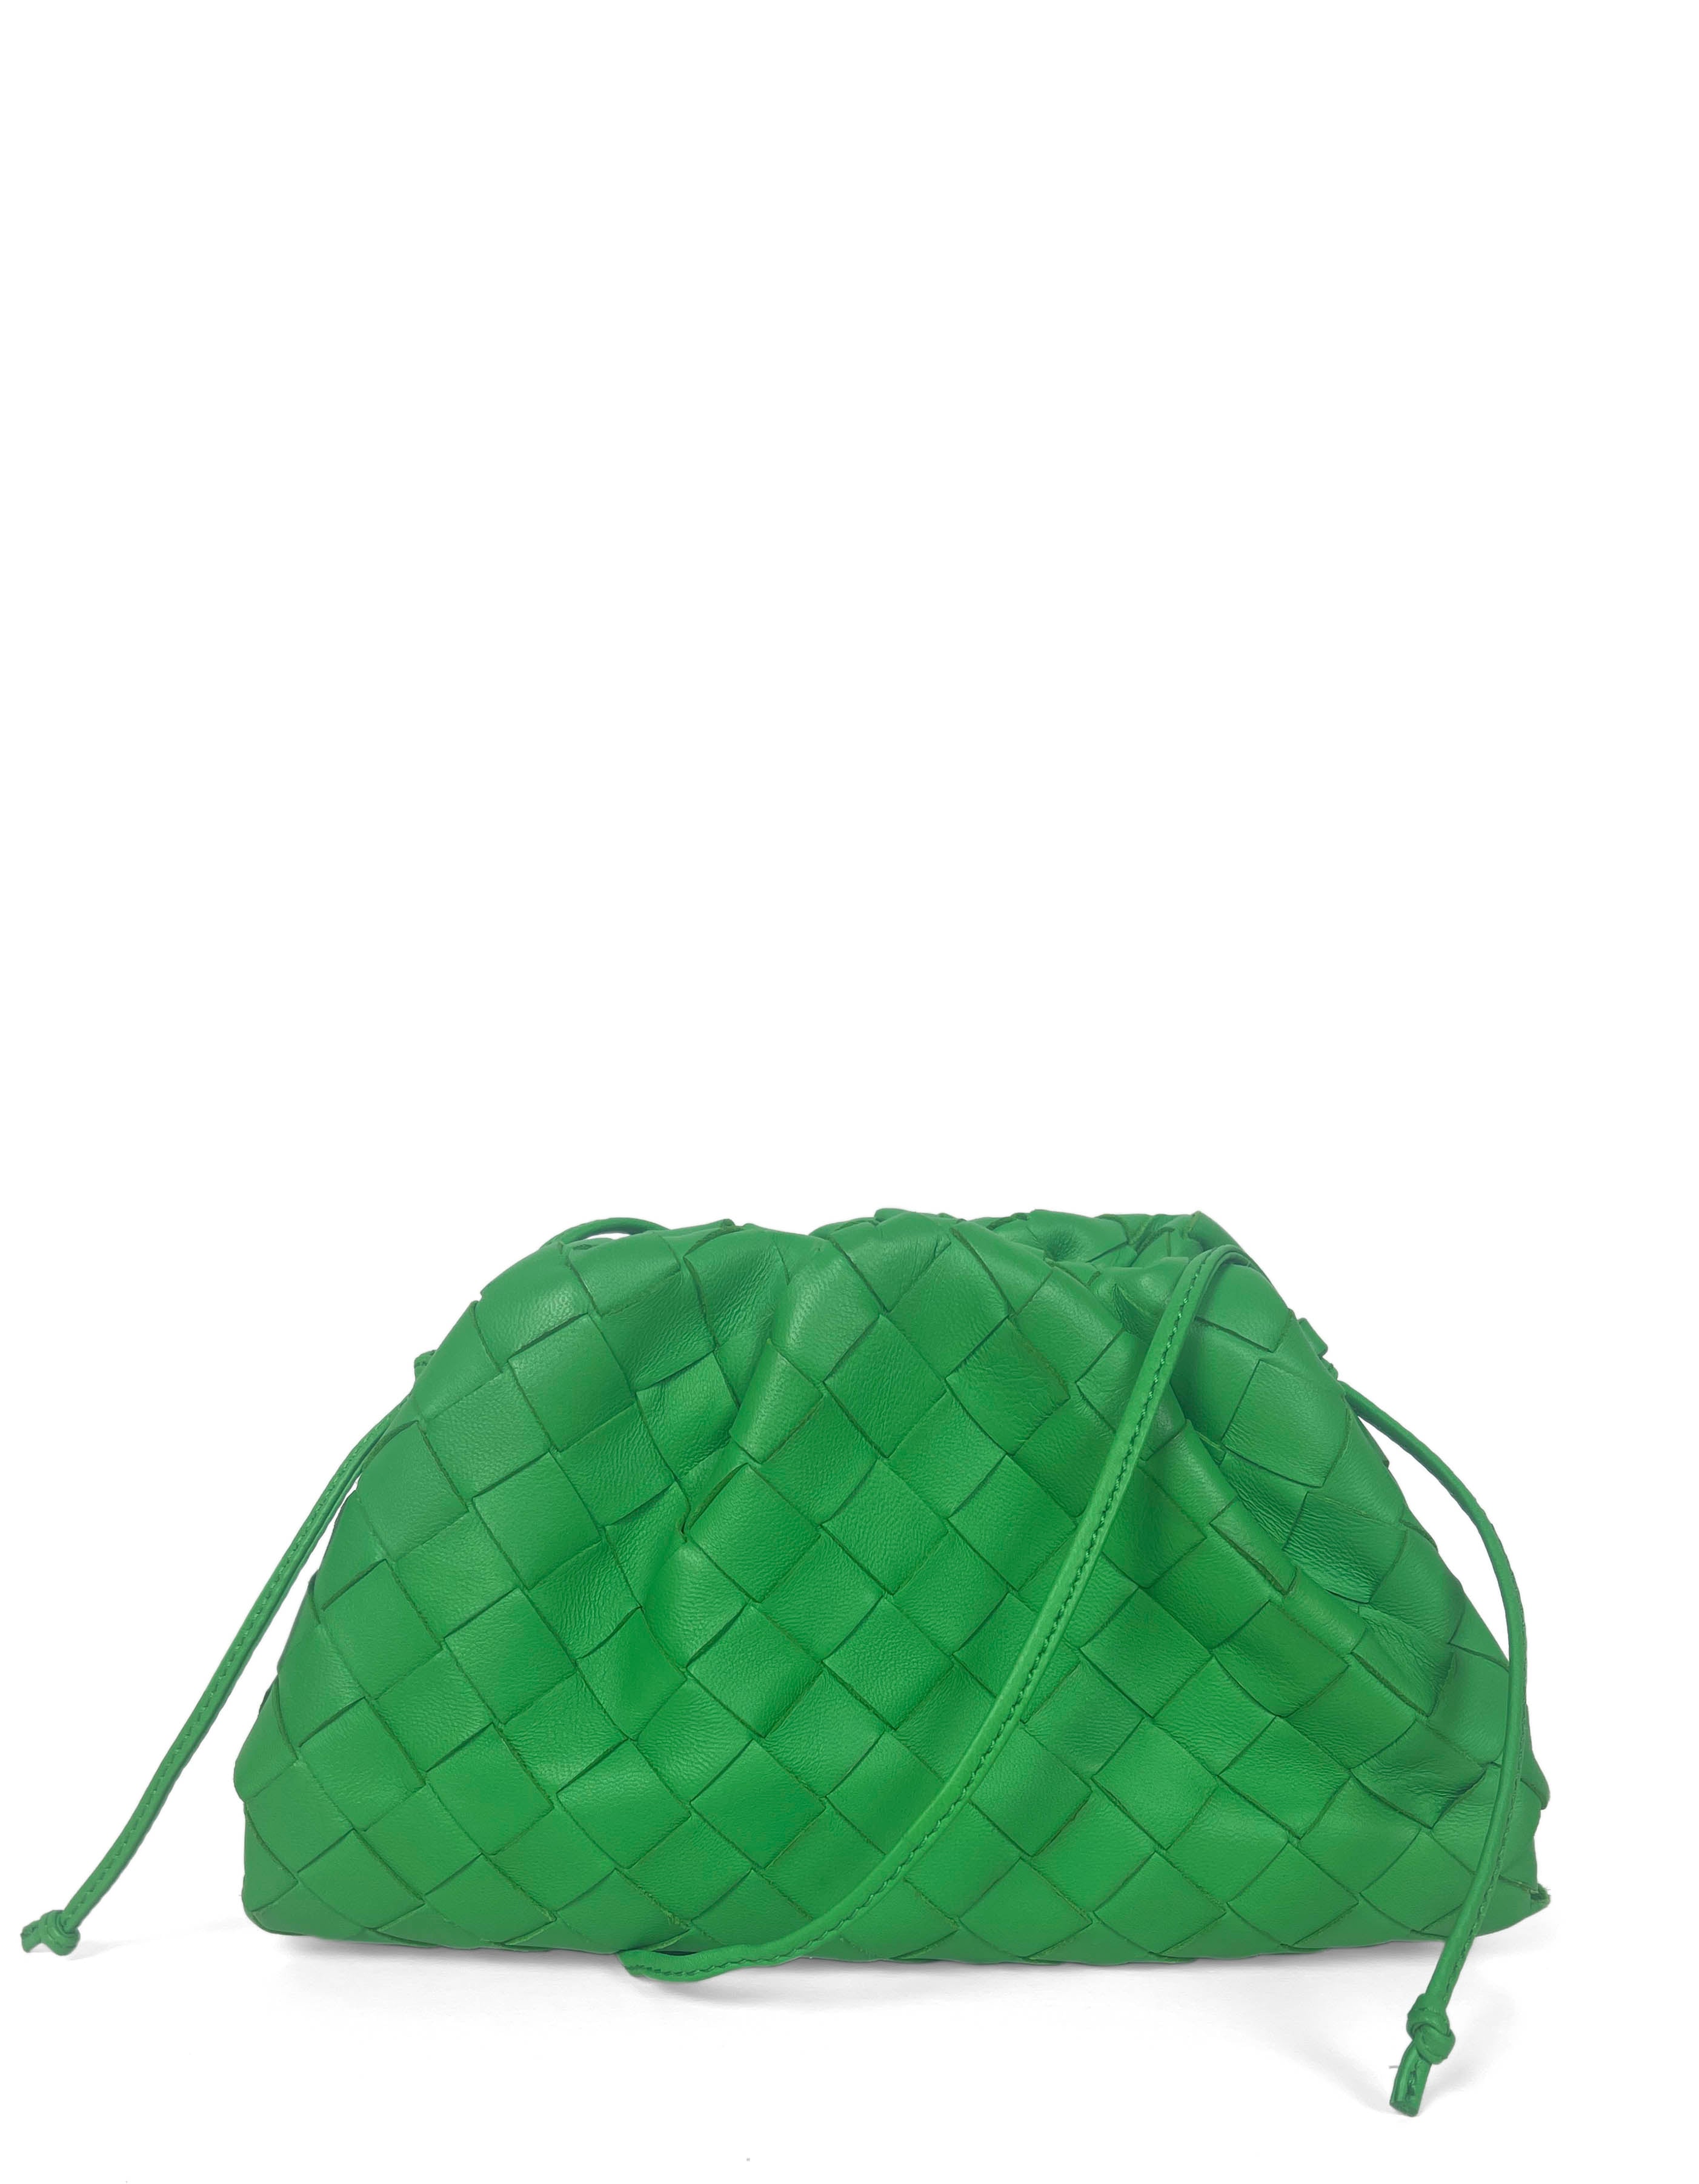 Bottega Veneta Green Intrecciato Leather The Mini Pouch Crossbody Bag